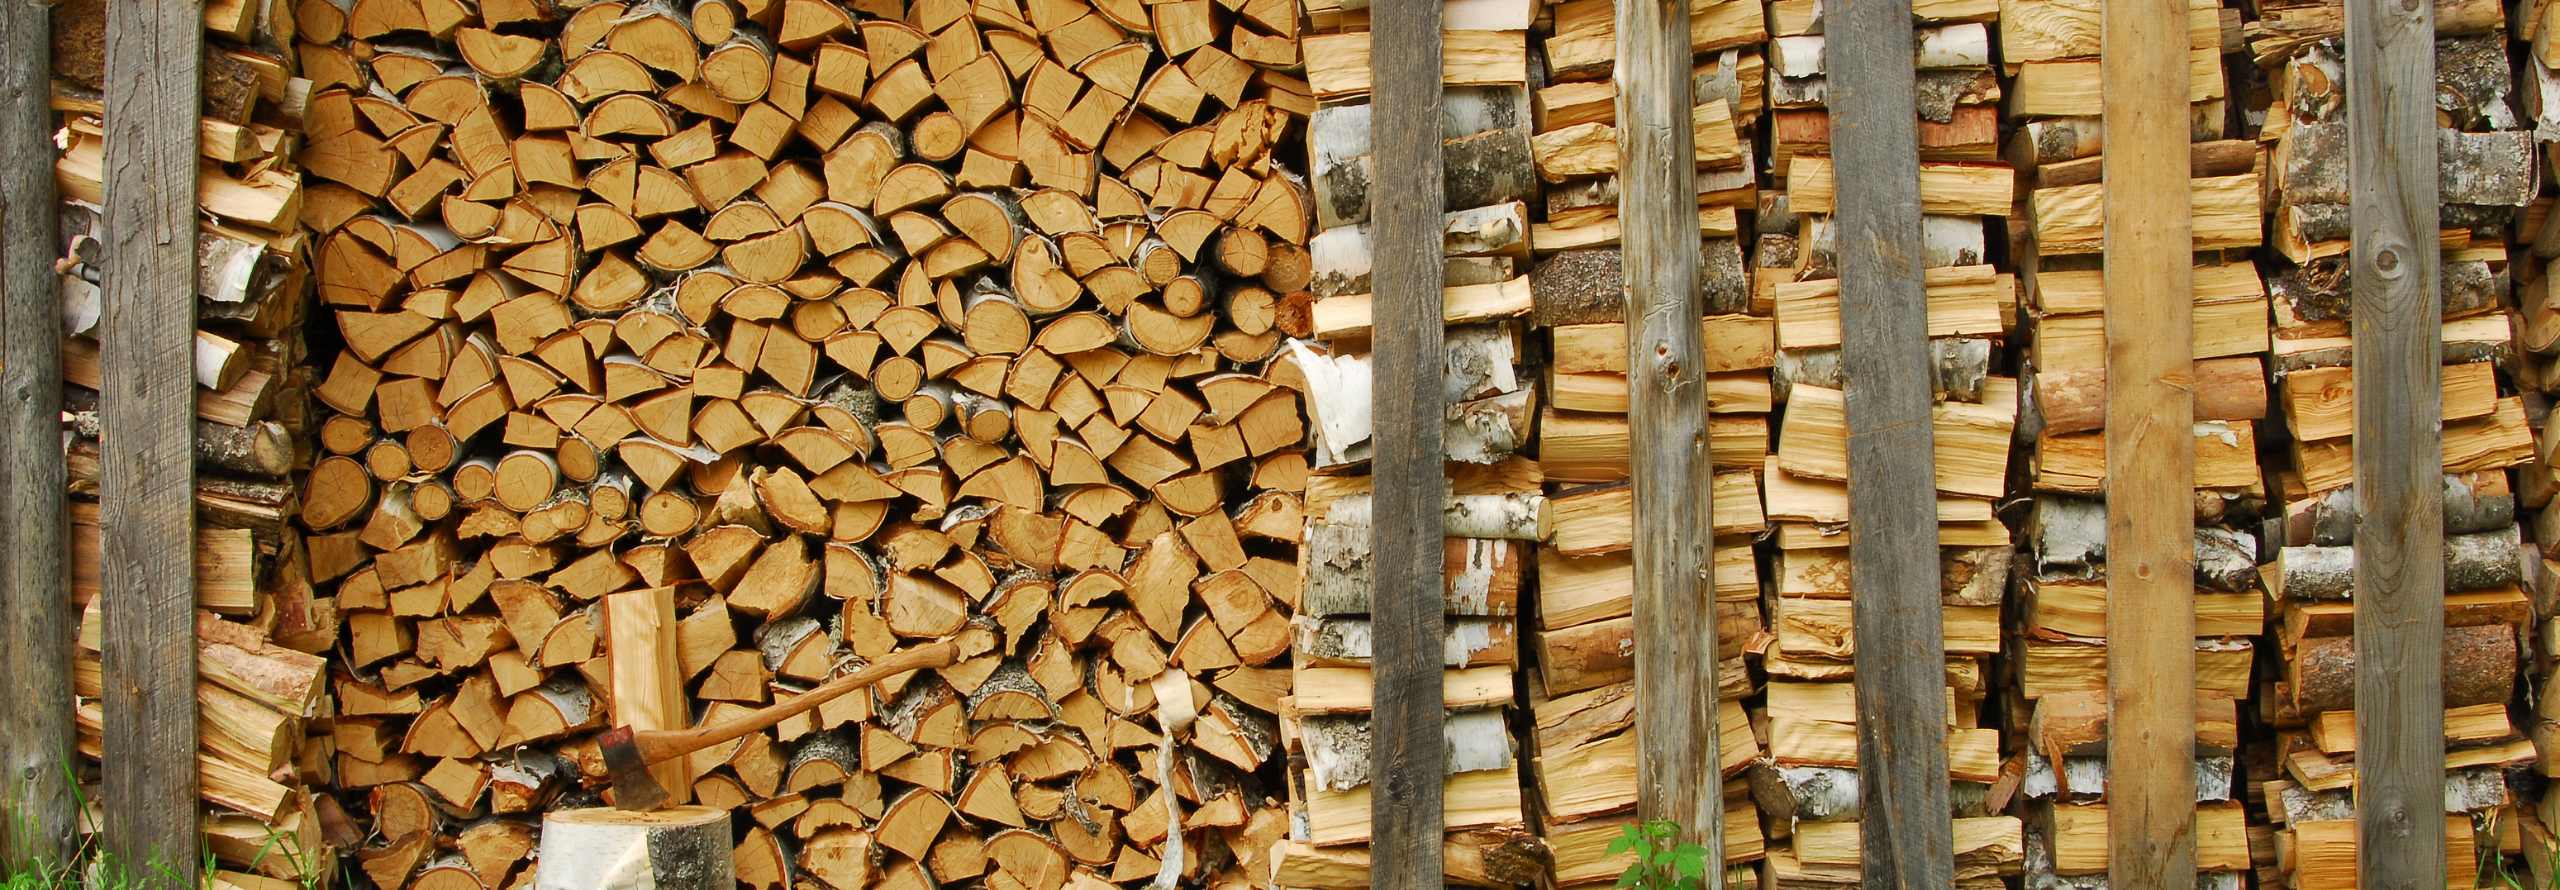 Brennholz lagern: Die wichtigsten Tipps und Tricks